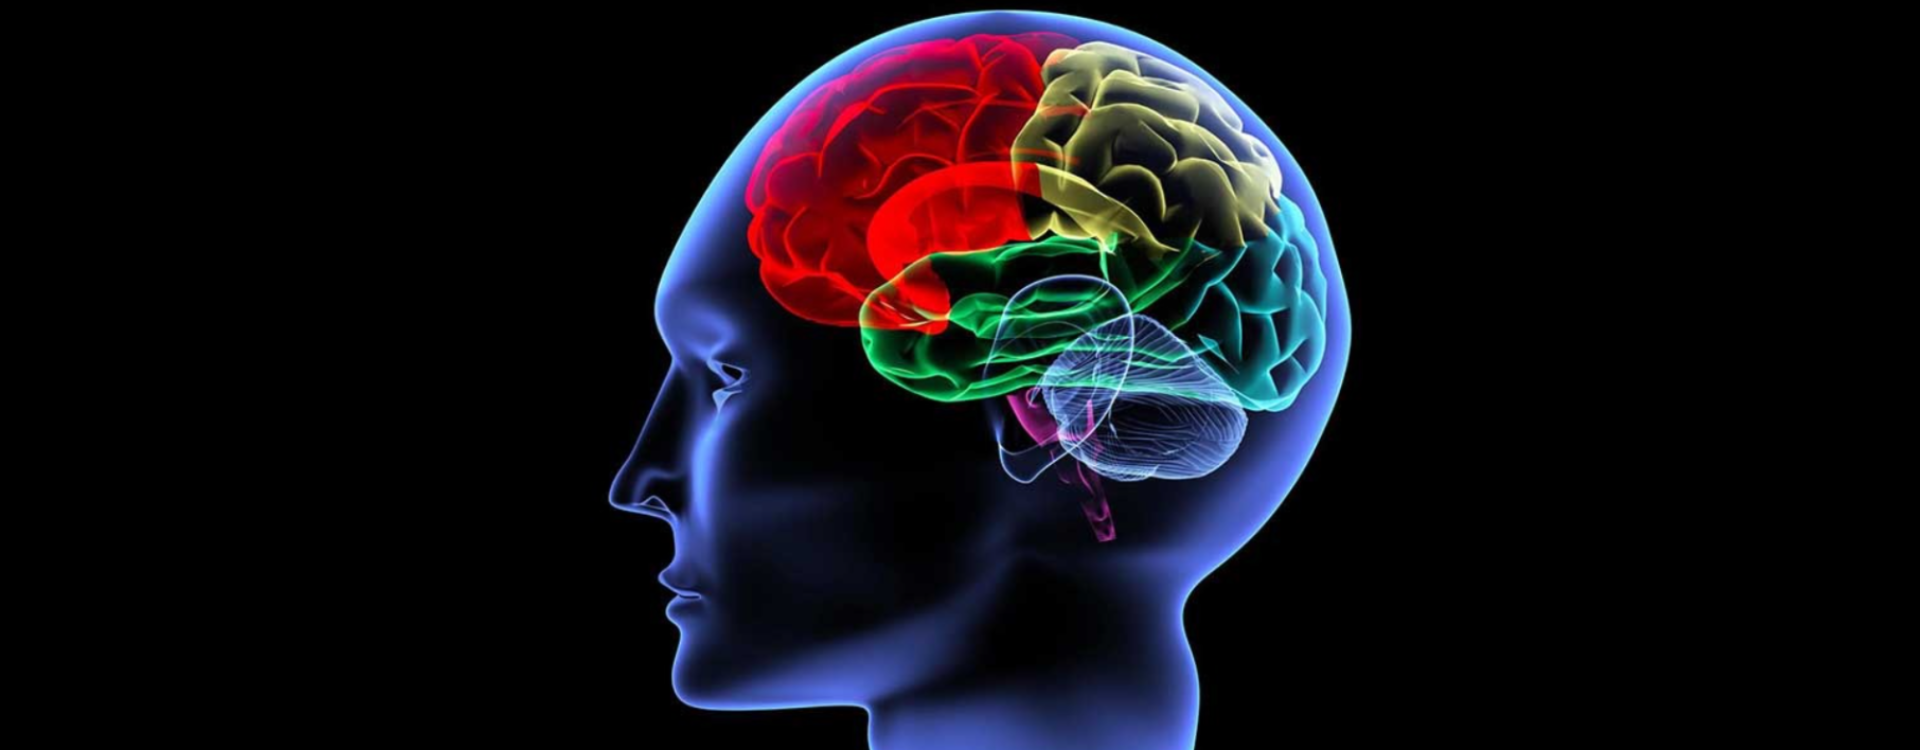 Światowy Dzień Mózgu - preparaty na pamięć i koncentrację